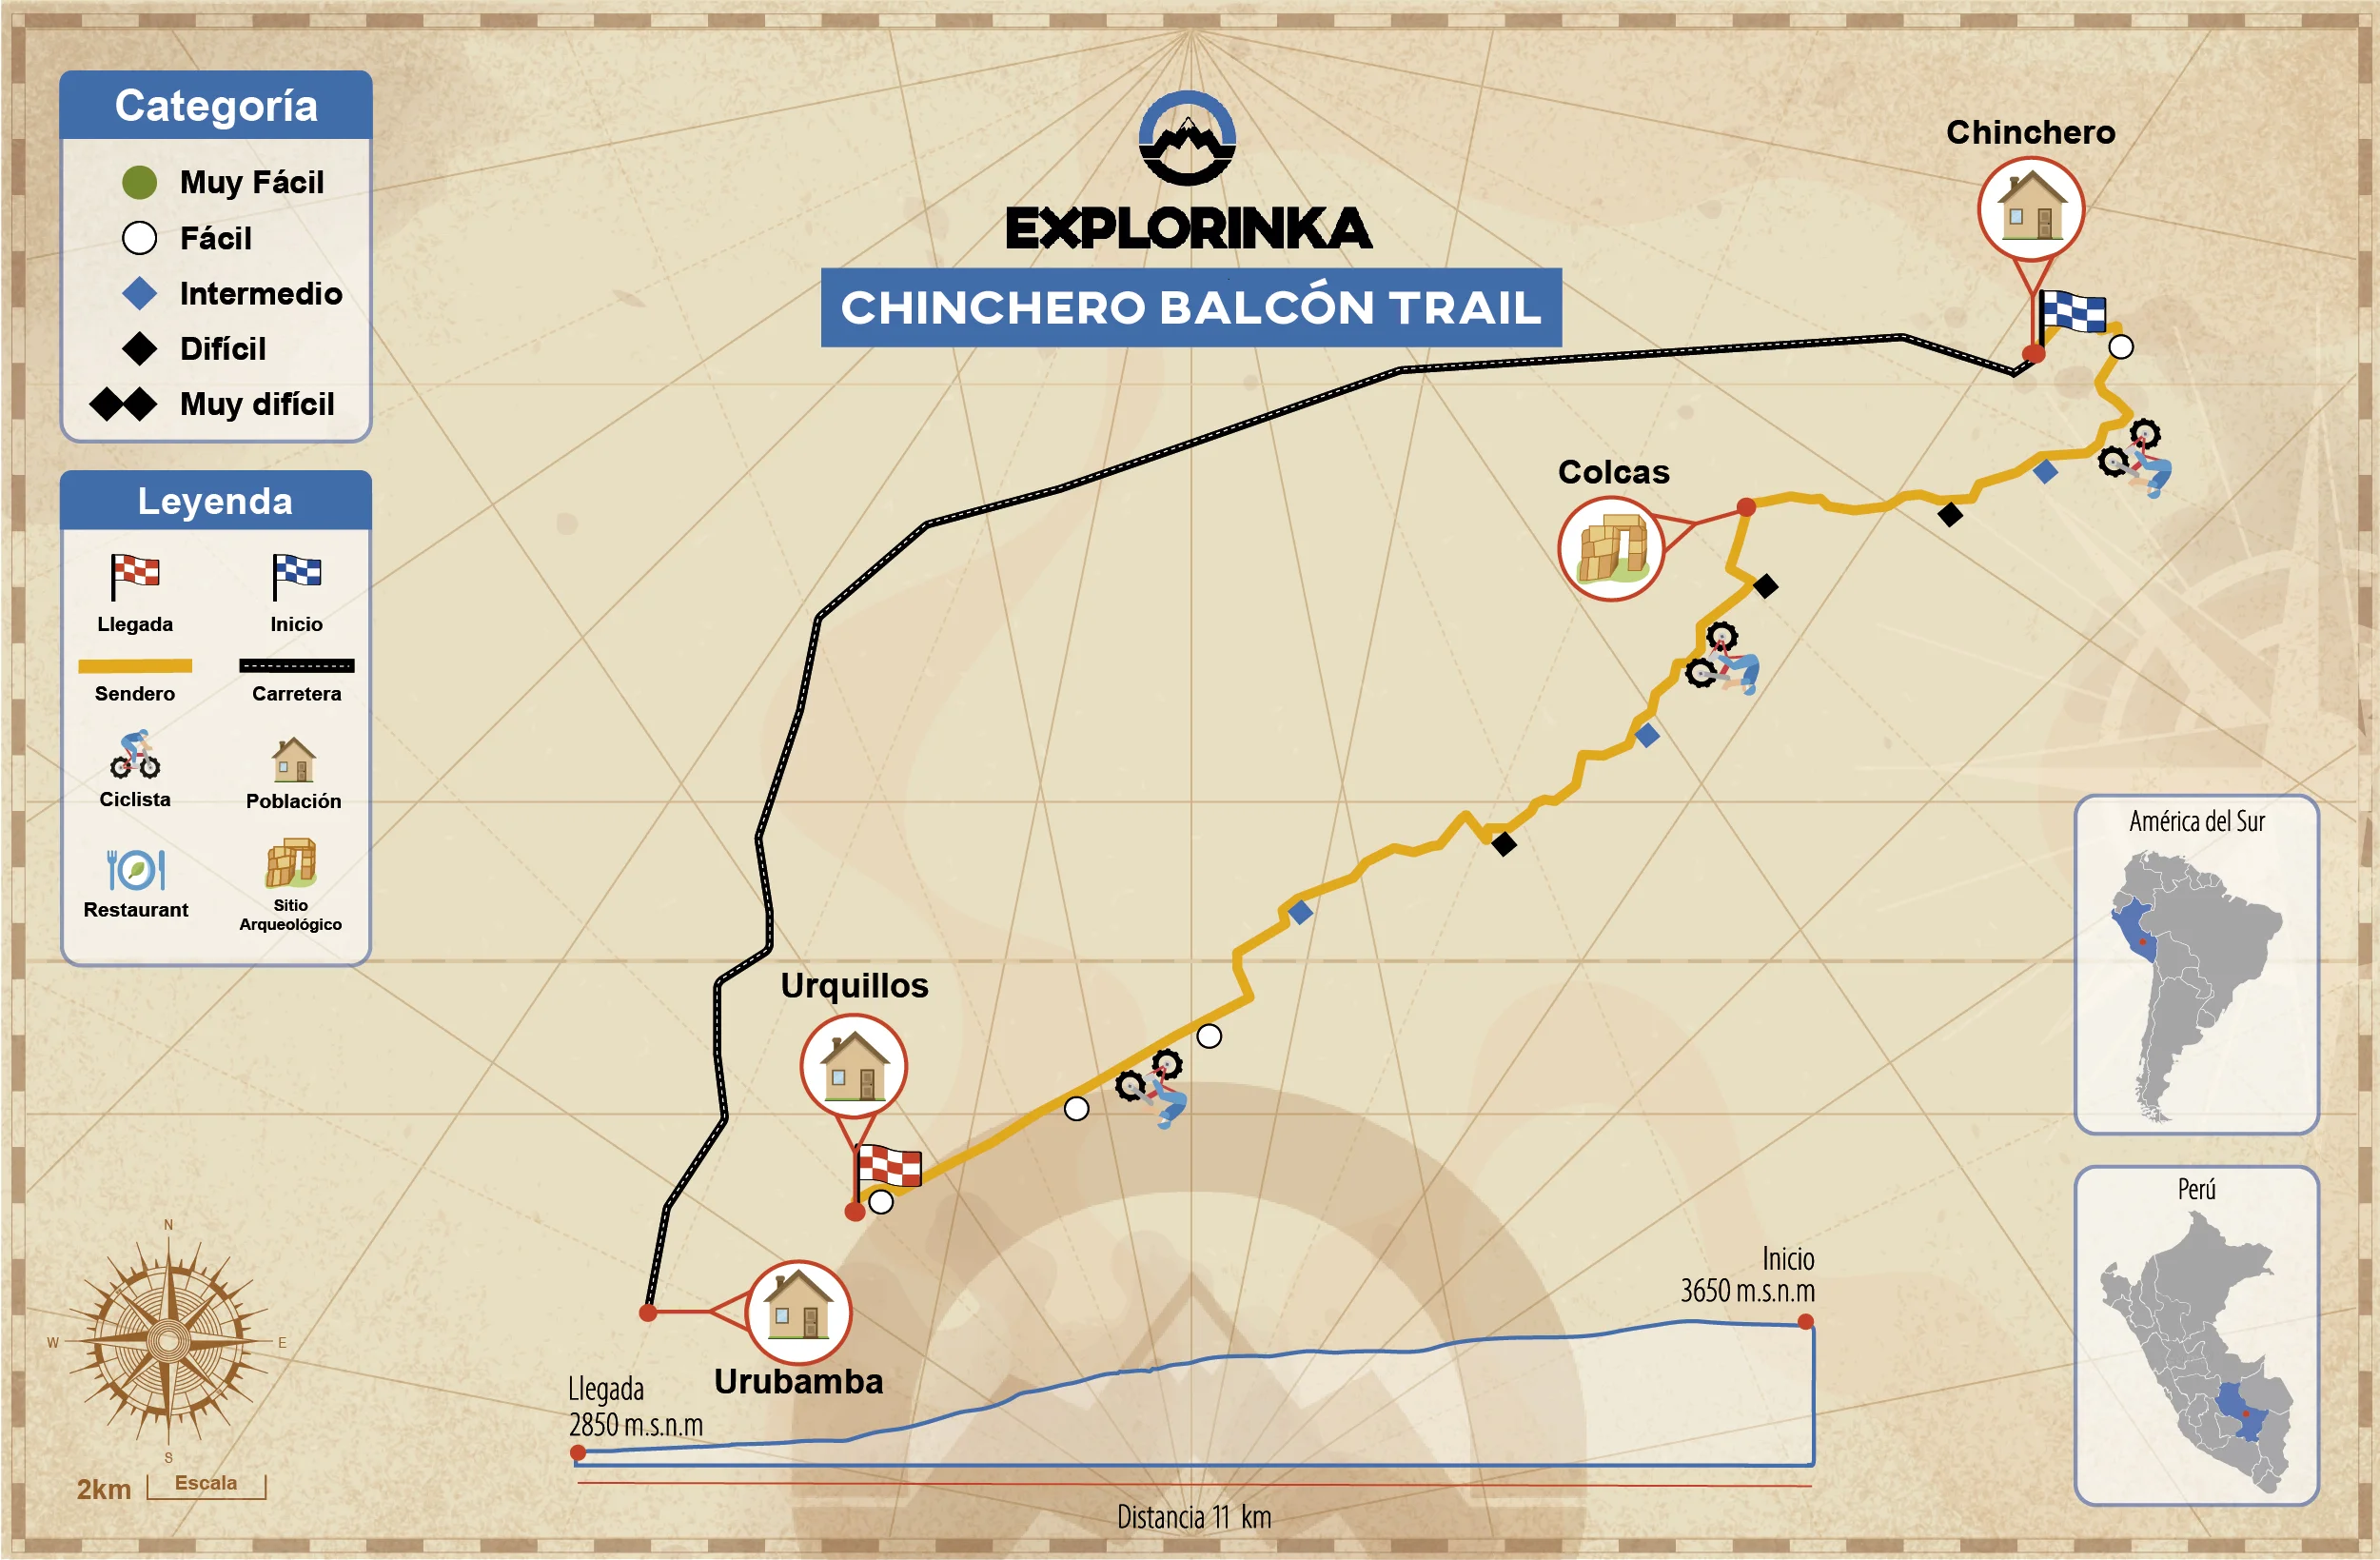 05 Chinchero Balcon Enduro Route